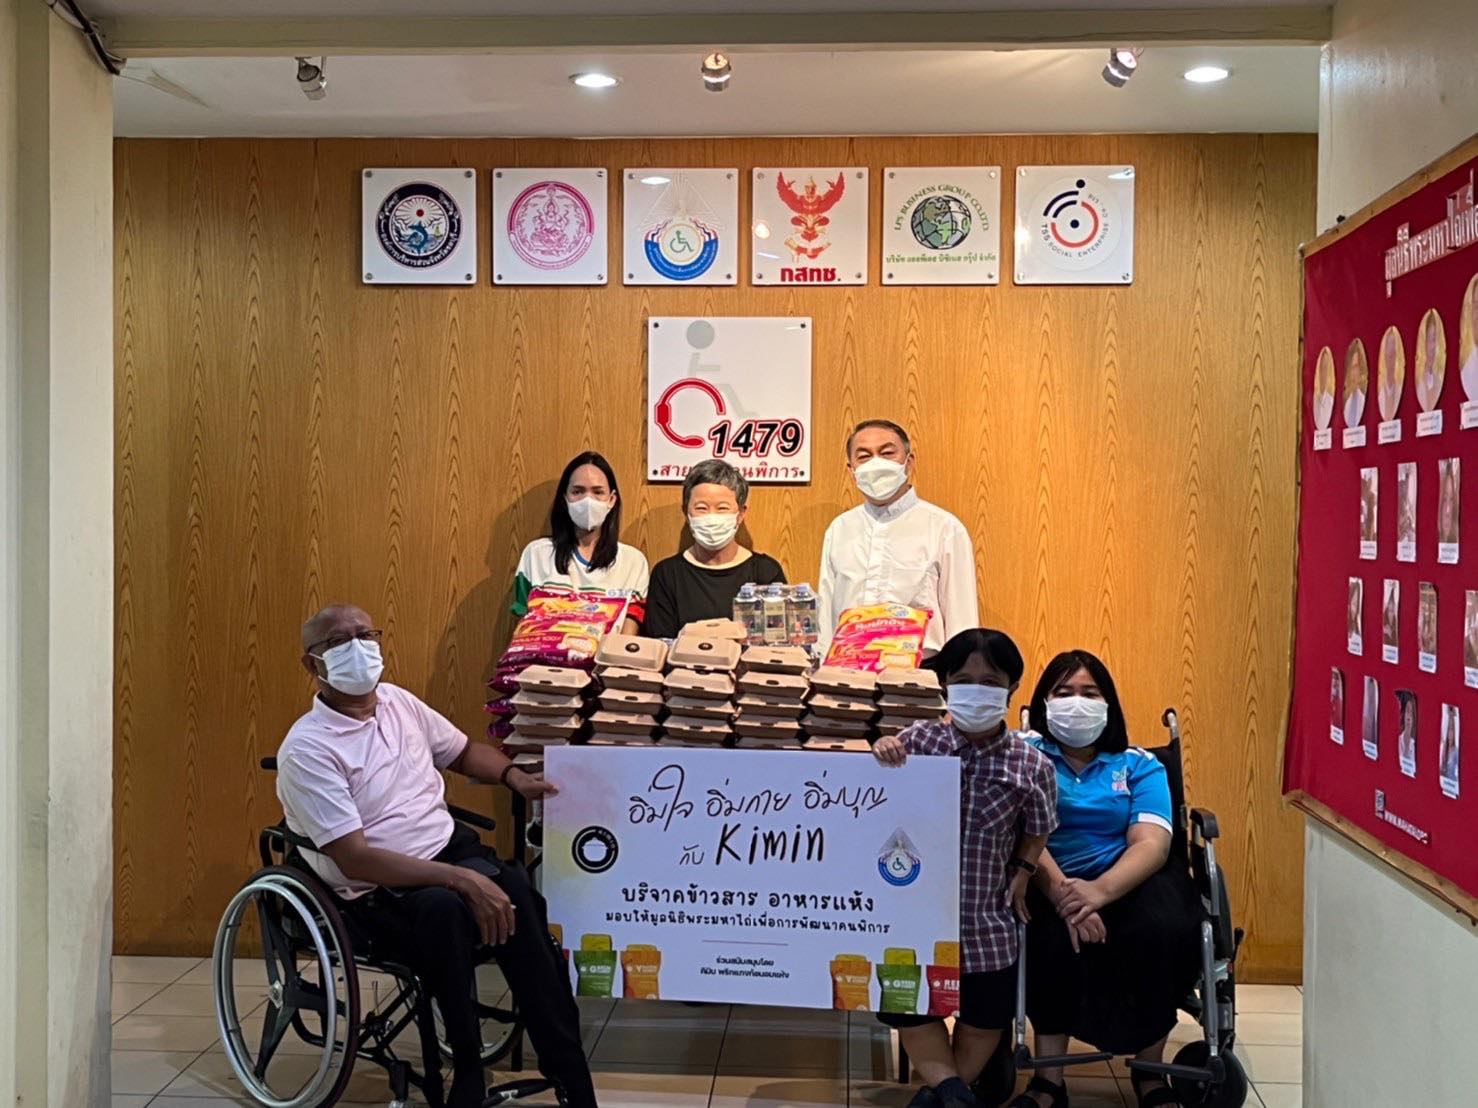 บริษัท คิมินเคอรี่ จำกัด ร่วมมือกับ มูลนิธิพระมหาไถ่ฯ ส่งรอยยิ้มให้น้องผู้พิการภายใต้โครงการ อิ่มใจ อิ่มกาย อิ่มบุญ กับ Kimin